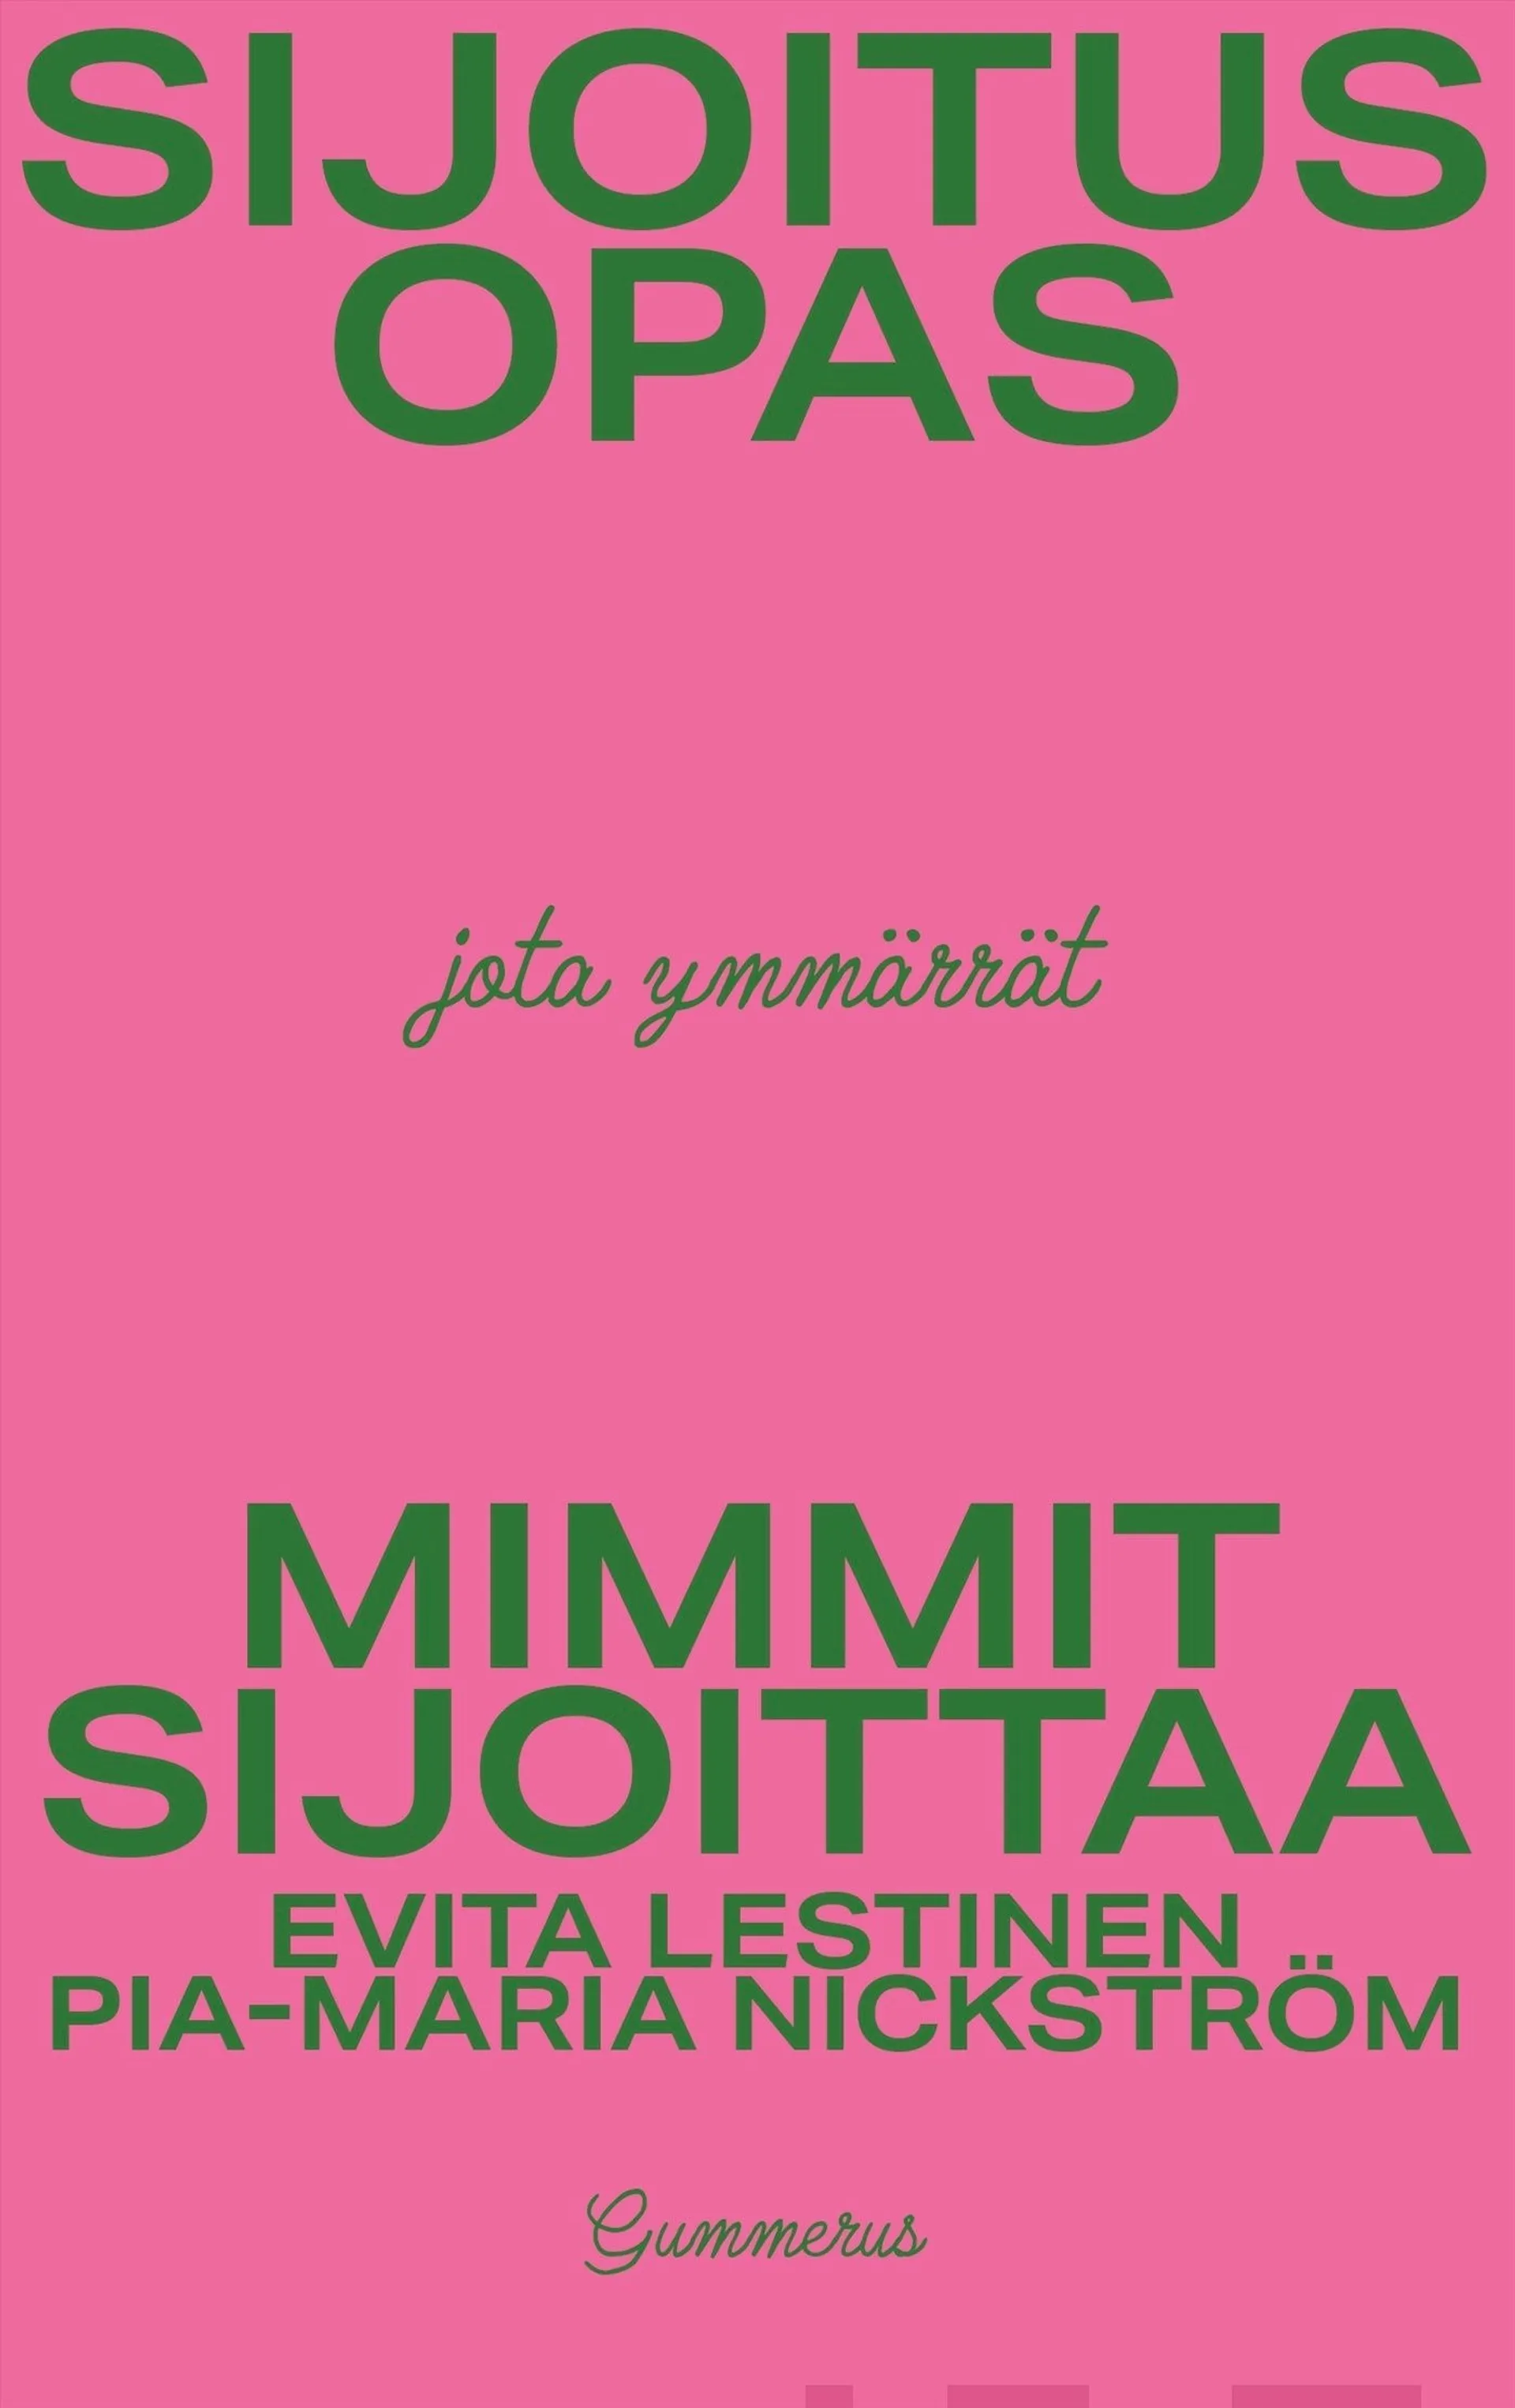 Evita Lestinen, Pia-Maria Nickström, Mimmit sijoittaa - Sijoitusopas, jota ymmärrät